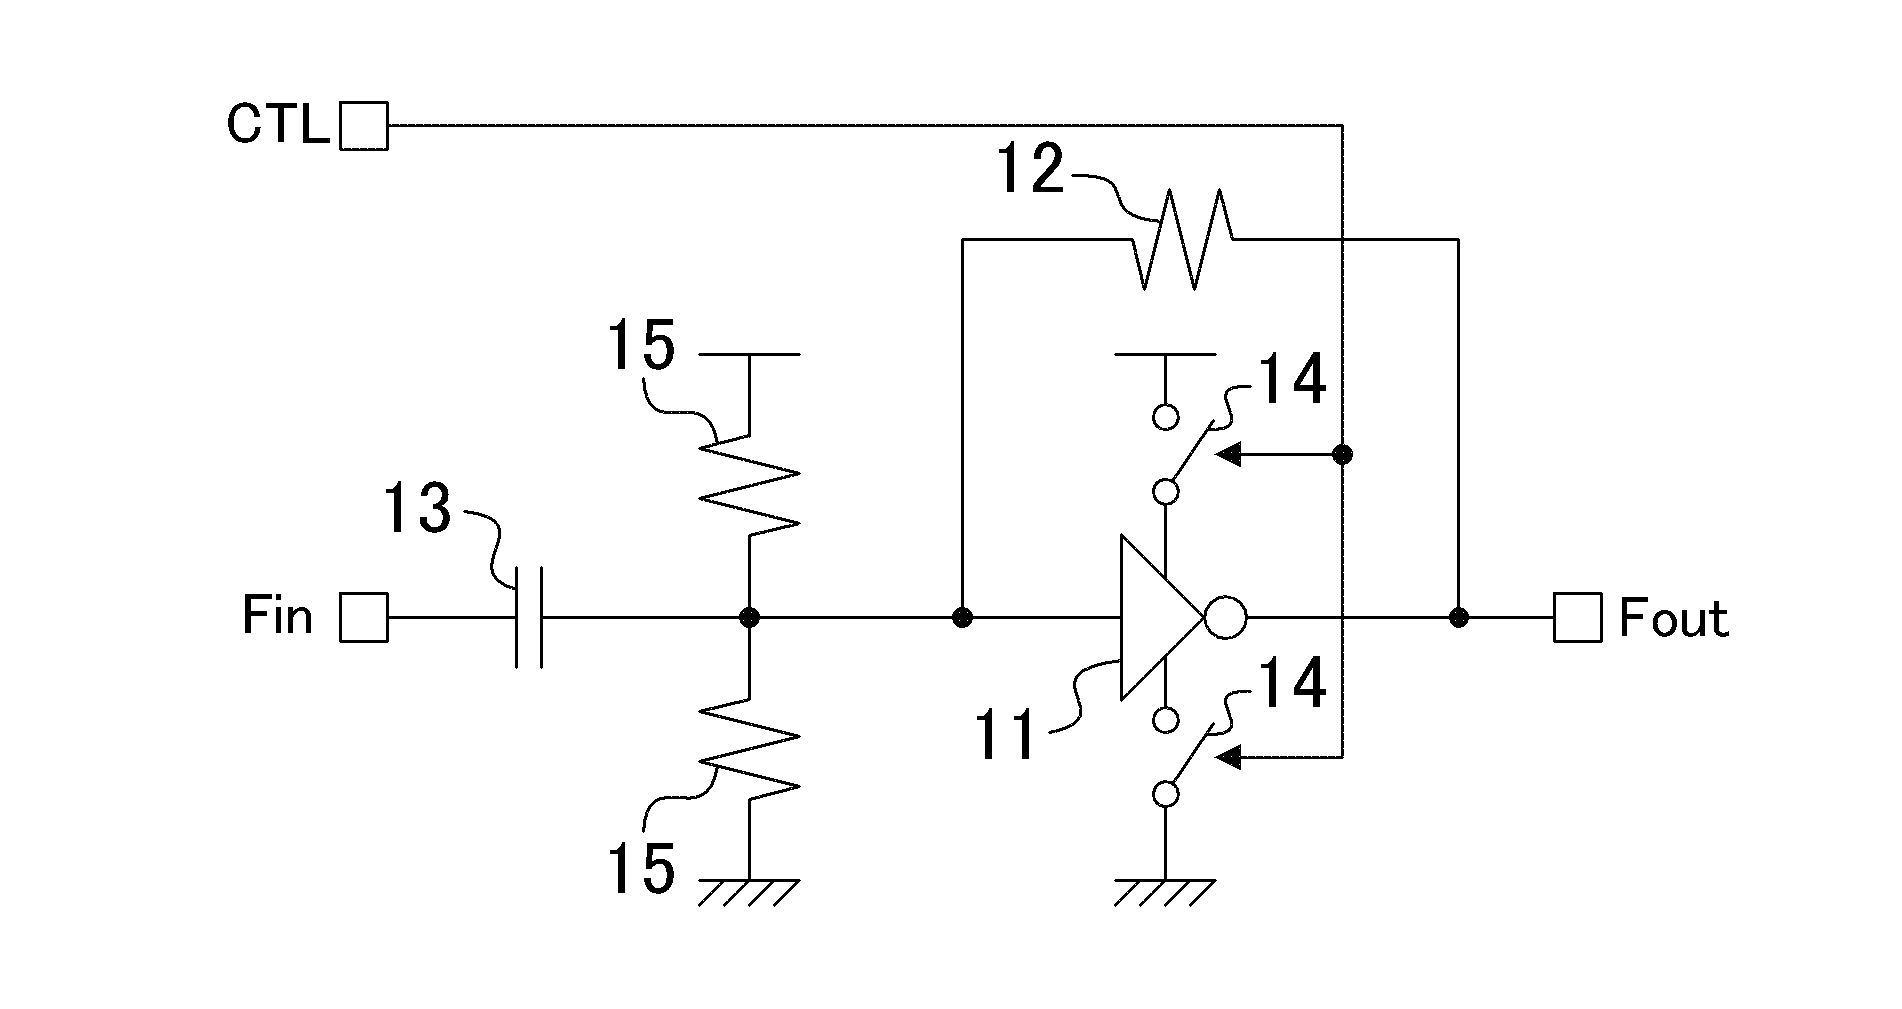 Clock signal amplifier circuit